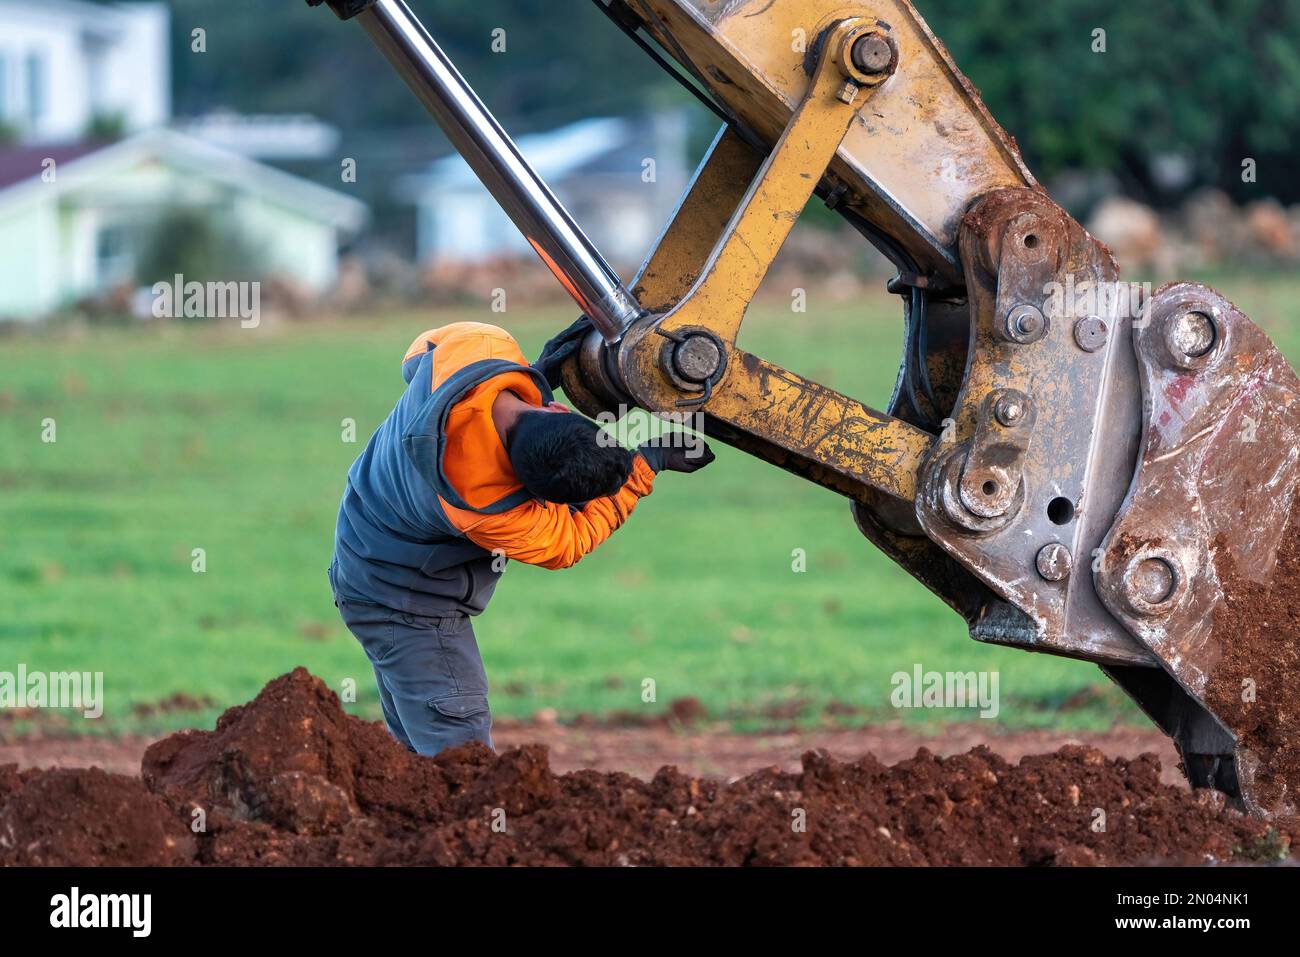 Excavator maintenance and repair operator doing repairs and maintenance. Stock Photo